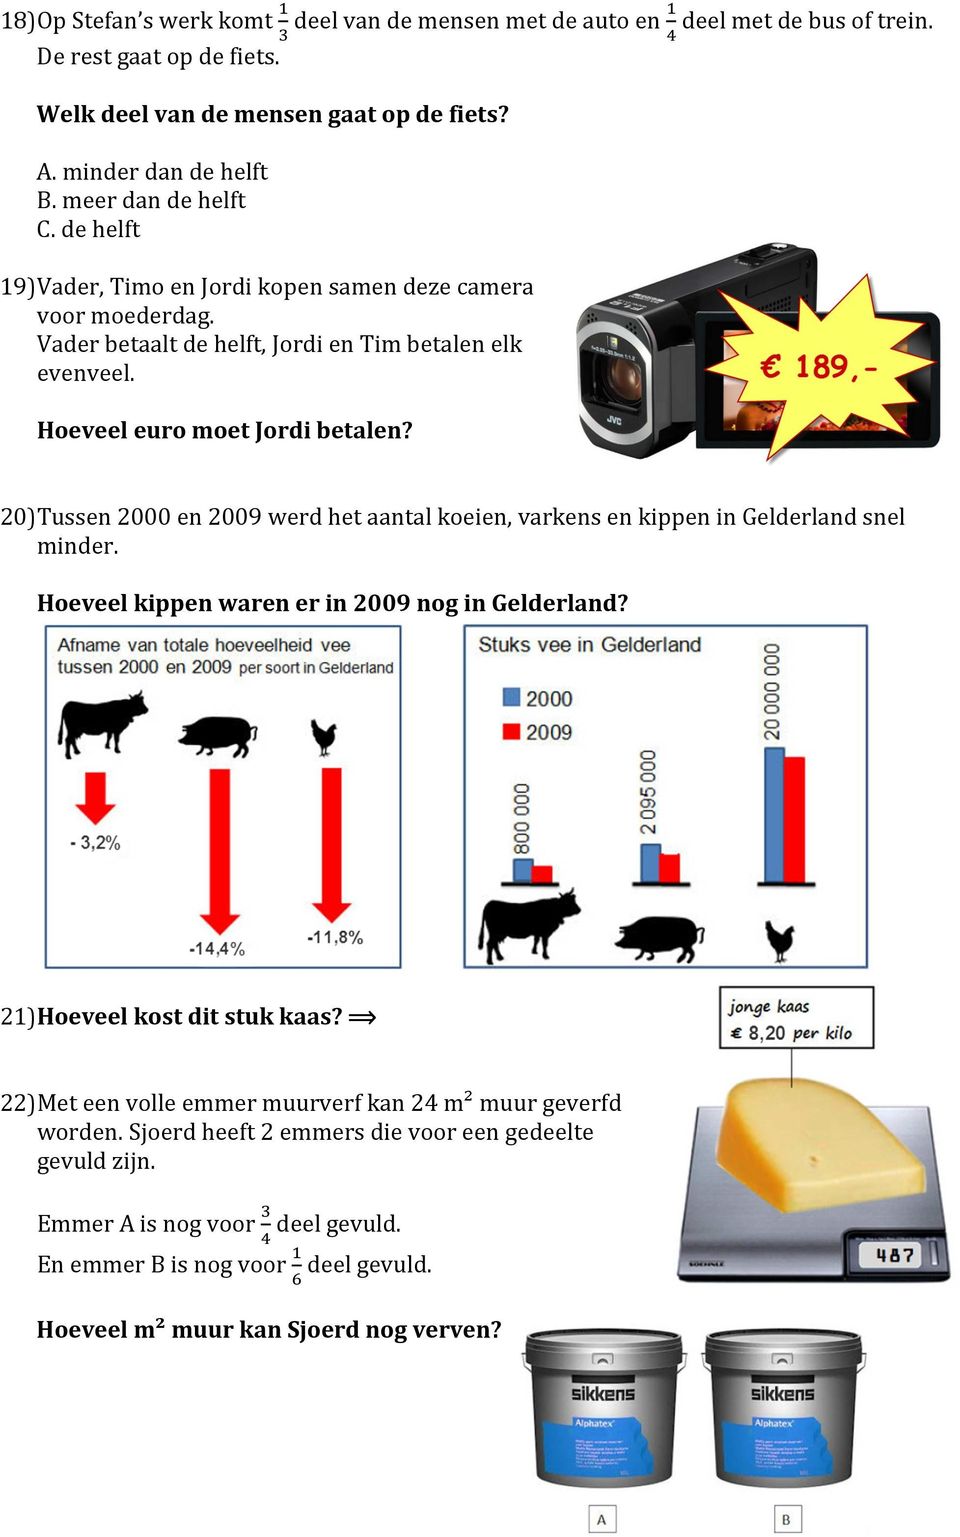 20) Tussen 2000 en 2009 werd het aantal koeien, varkens en kippen in Gelderland snel minder. Hoeveel kippen waren er in 2009 nog in Gelderland? 21) Hoeveel kost dit stuk kaas?